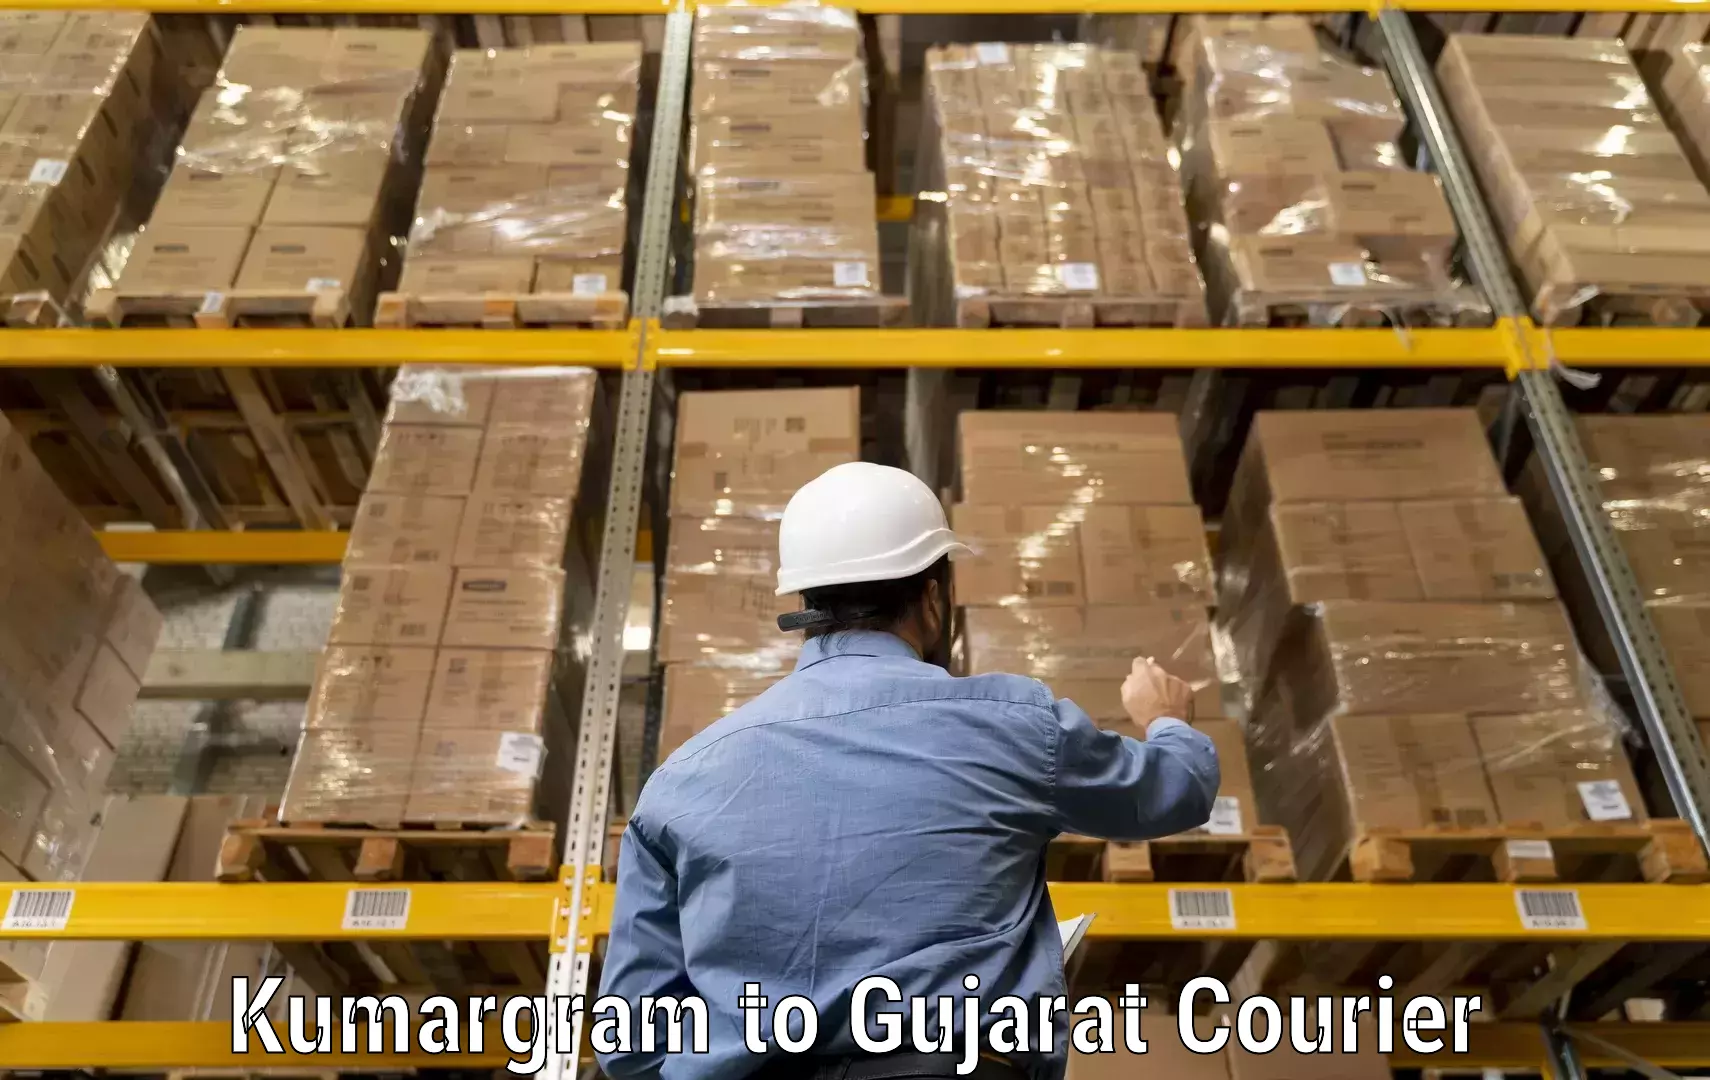 Online courier booking Kumargram to IIIT Surat